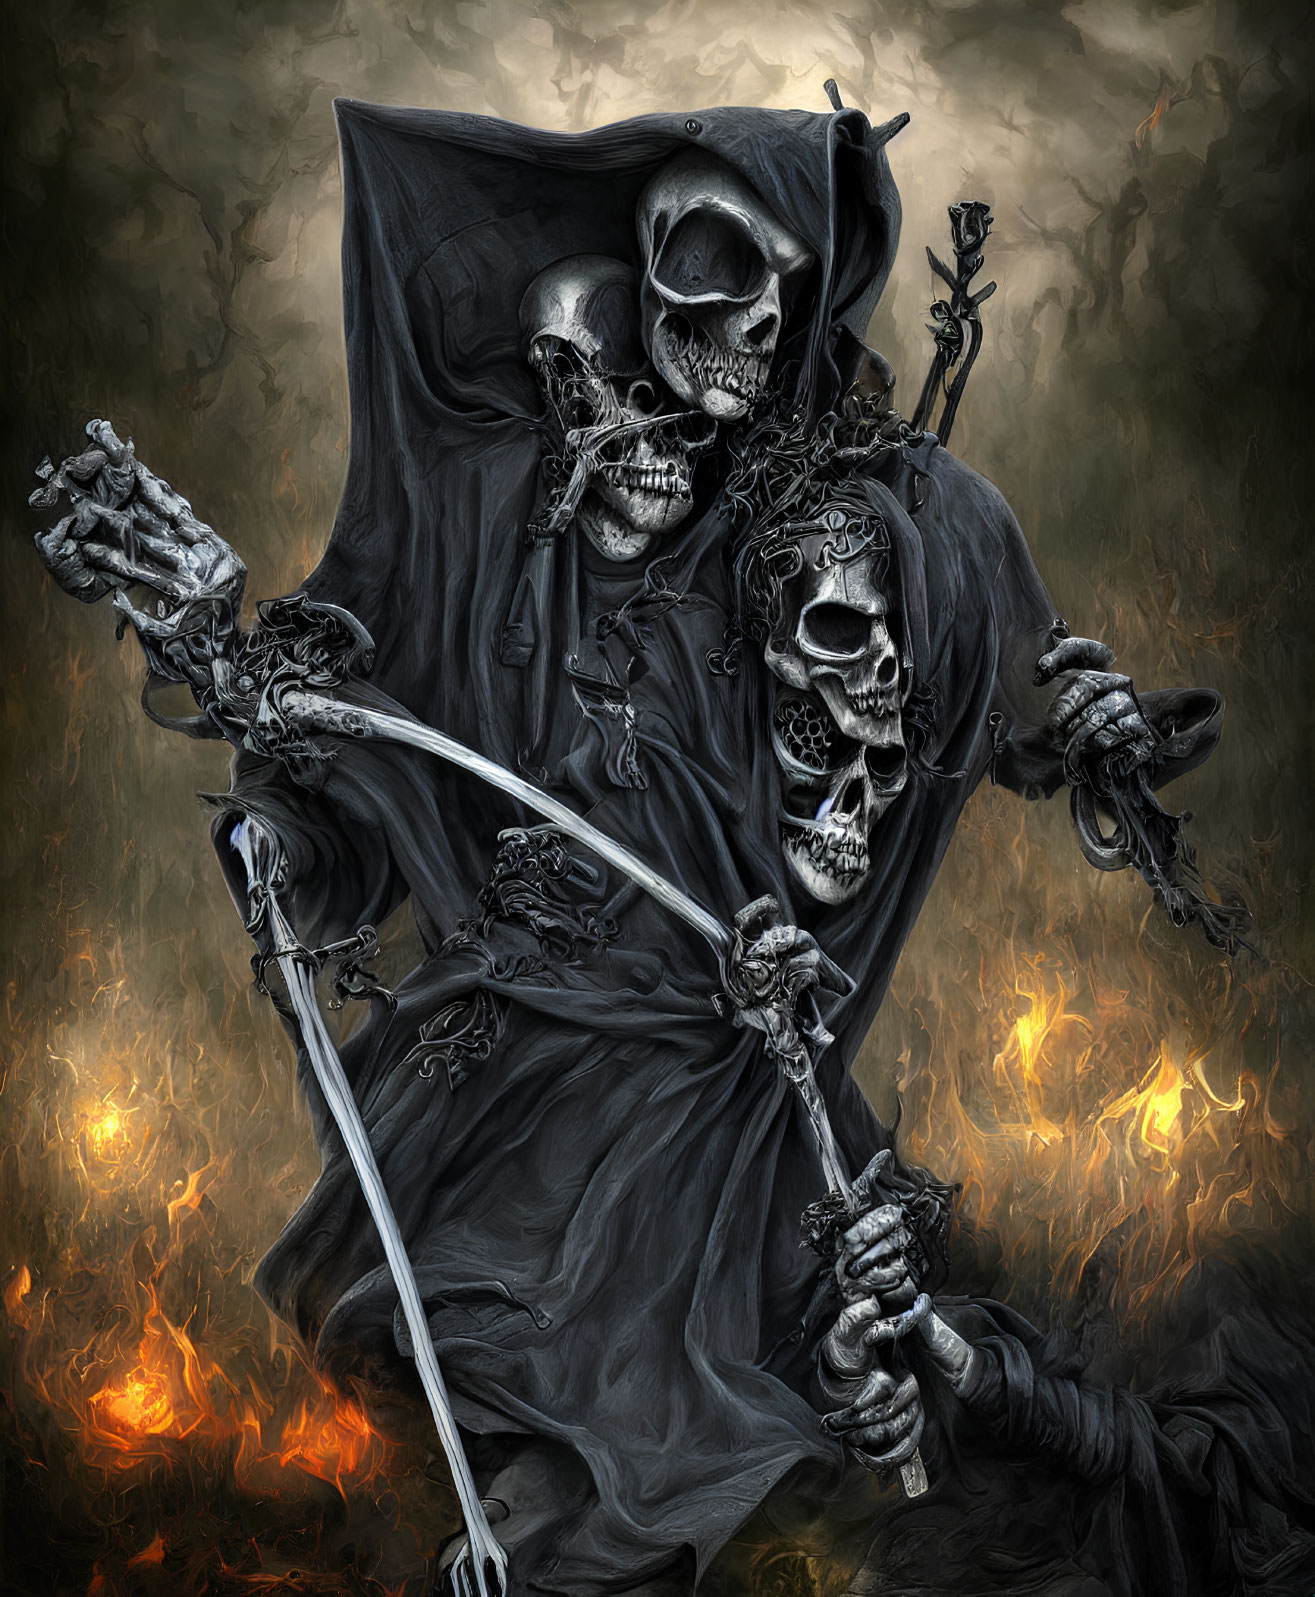 Skeletal grim reaper in dark cloak wields scythe in fiery setting